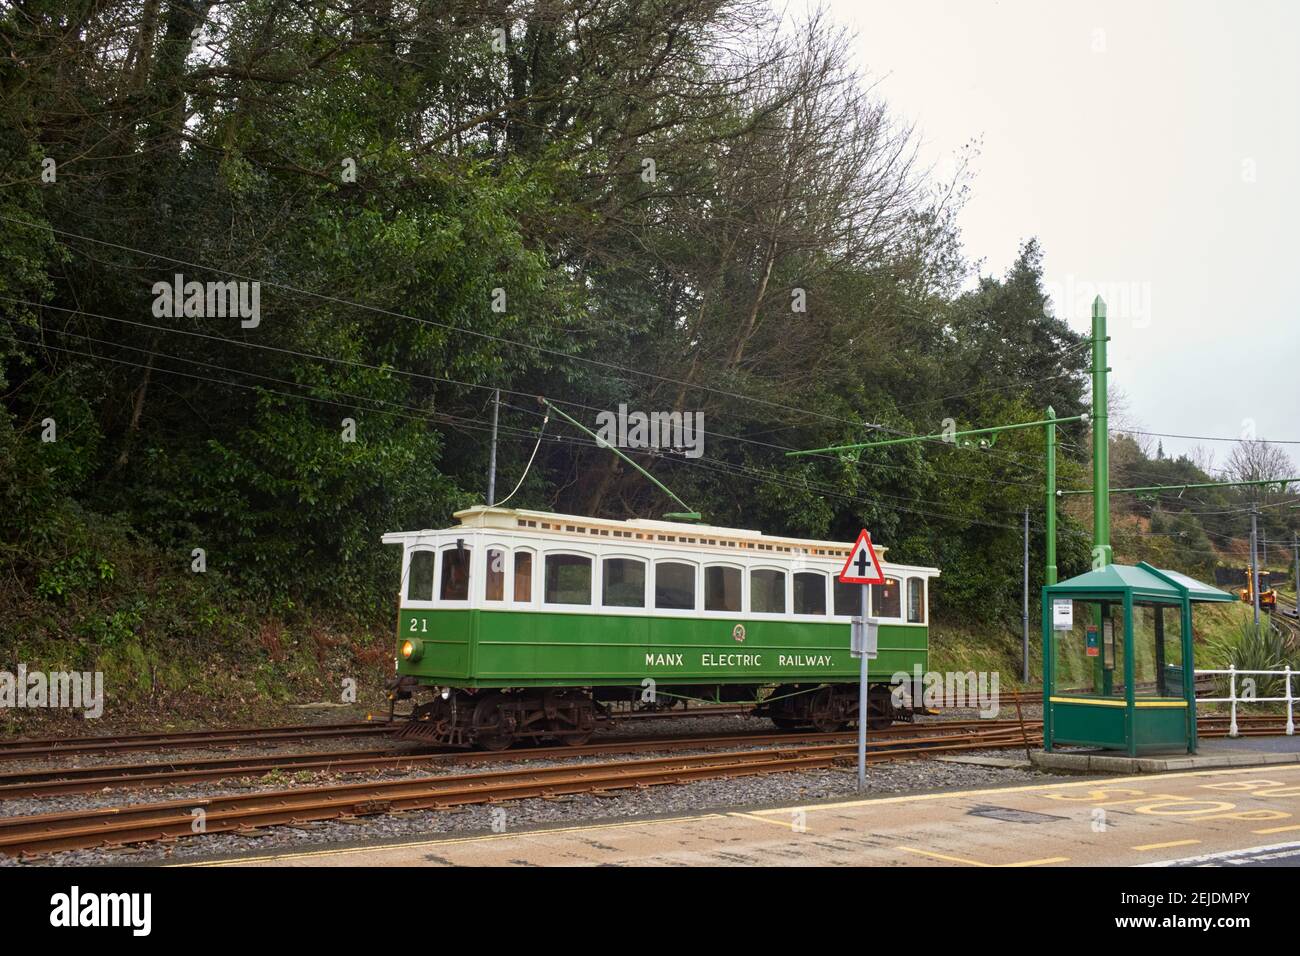 Voiture de chemin de fer électrique Manx numéro 21 lors d'un essai À Laxey Banque D'Images